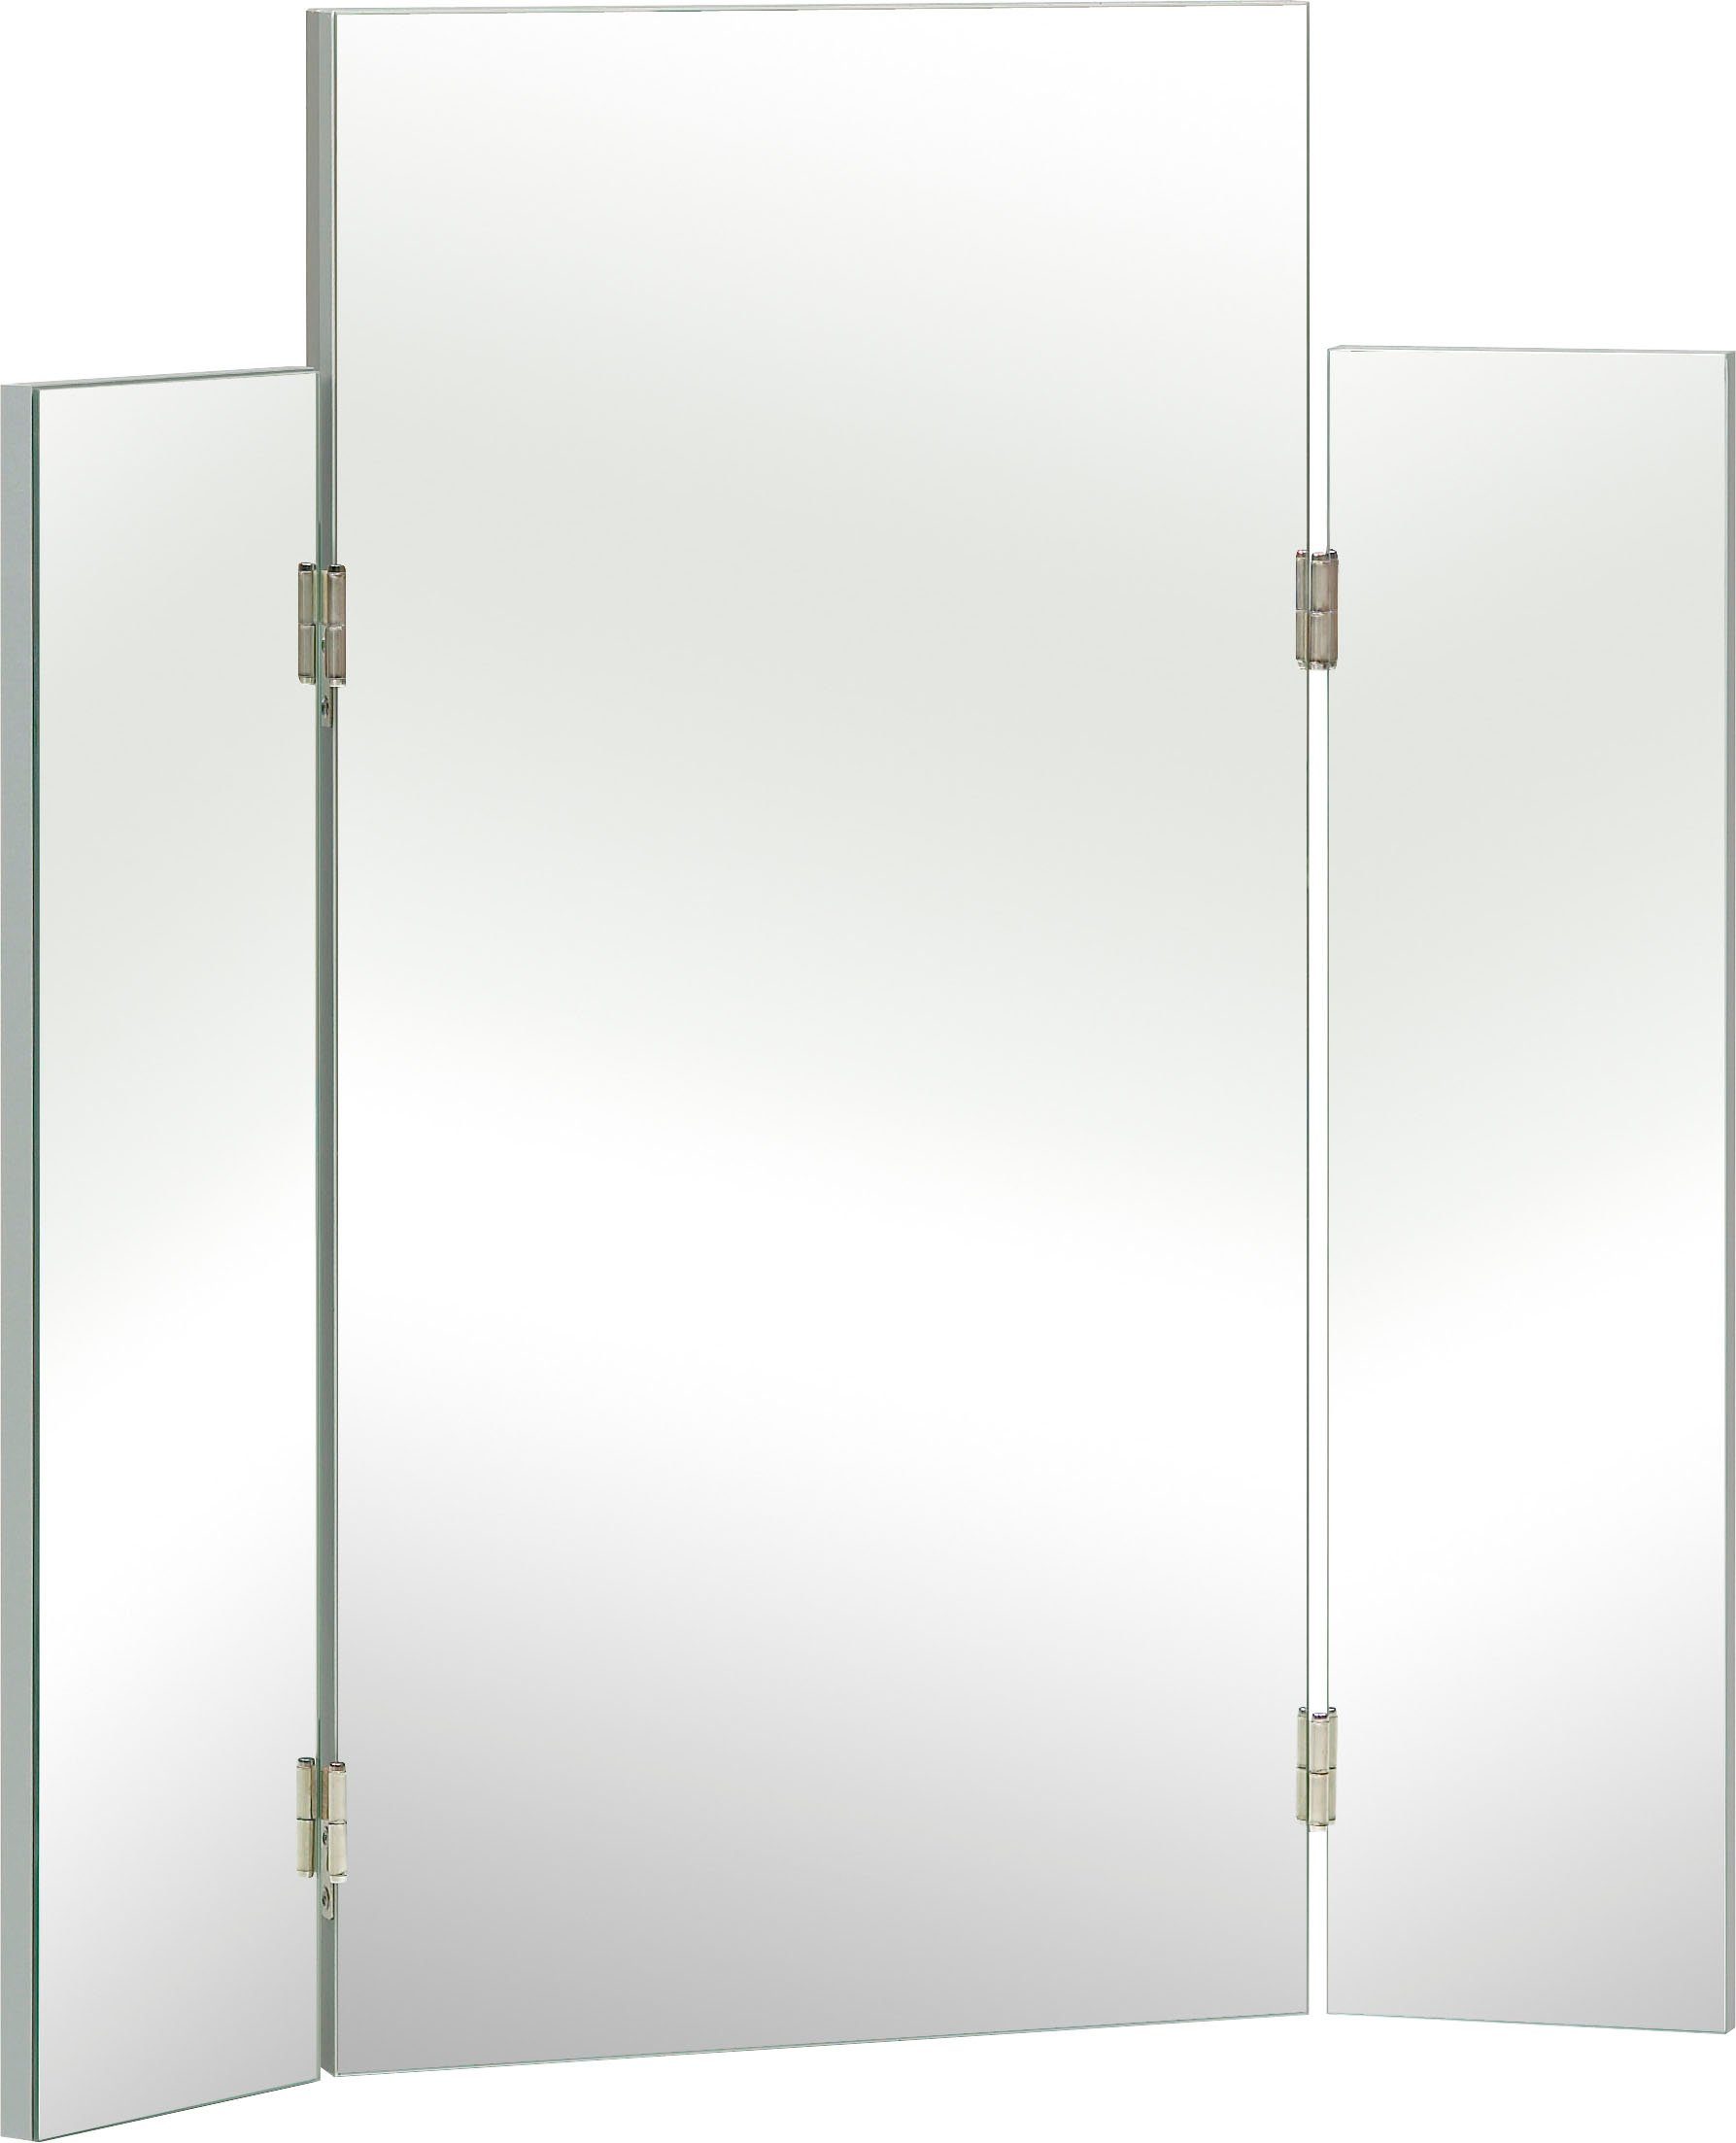 saphir spiegel quickset 955 spiegel mit seitlichen klappelementen, 72 cm breit wit